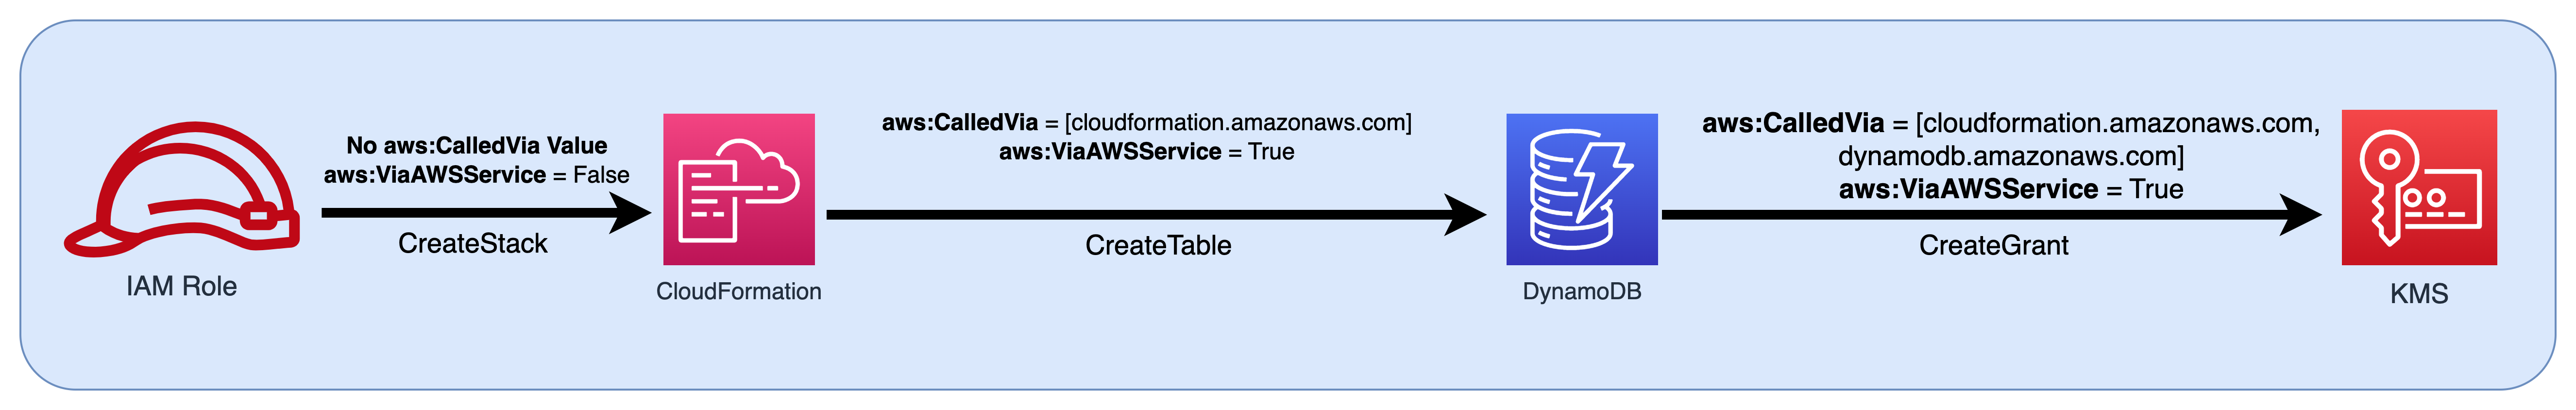 Diagram alir peran IAM diteruskan sebagai prinsipal ke CloudFormation dan kemudian meneruskan nilai kunci kondisi ke DynamoDB dan. AWS KMS